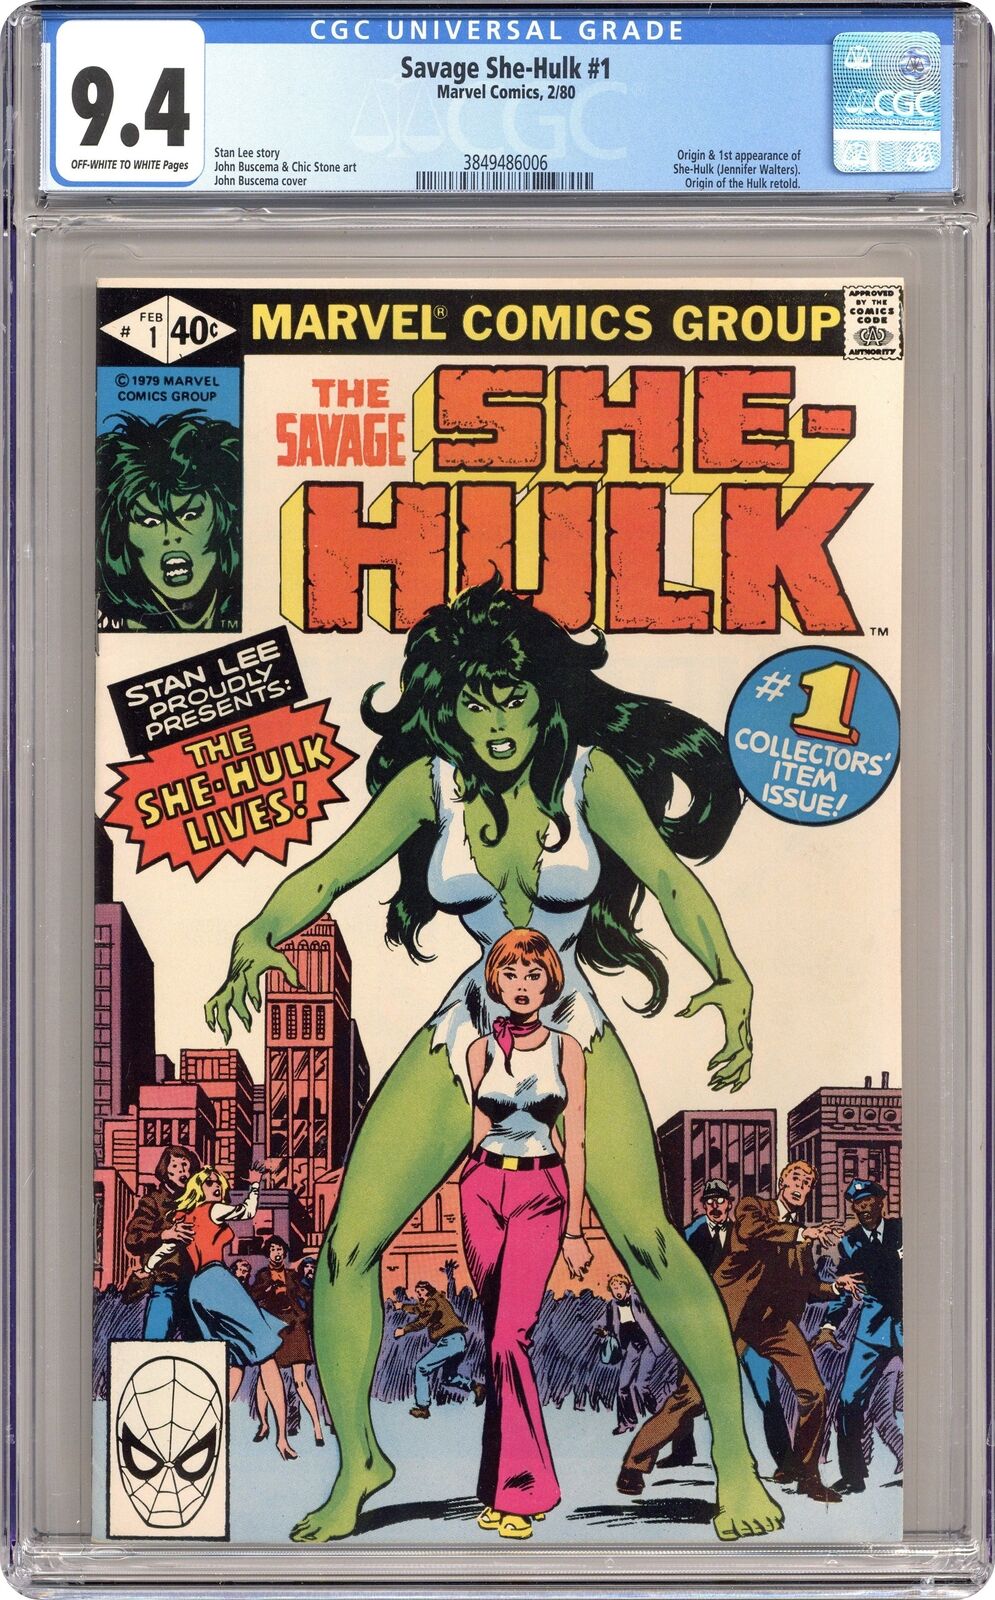 Savage She-Hulk 1D Direct Variant CGC 9.4 1980 3849486006 1st app. She-Hulk